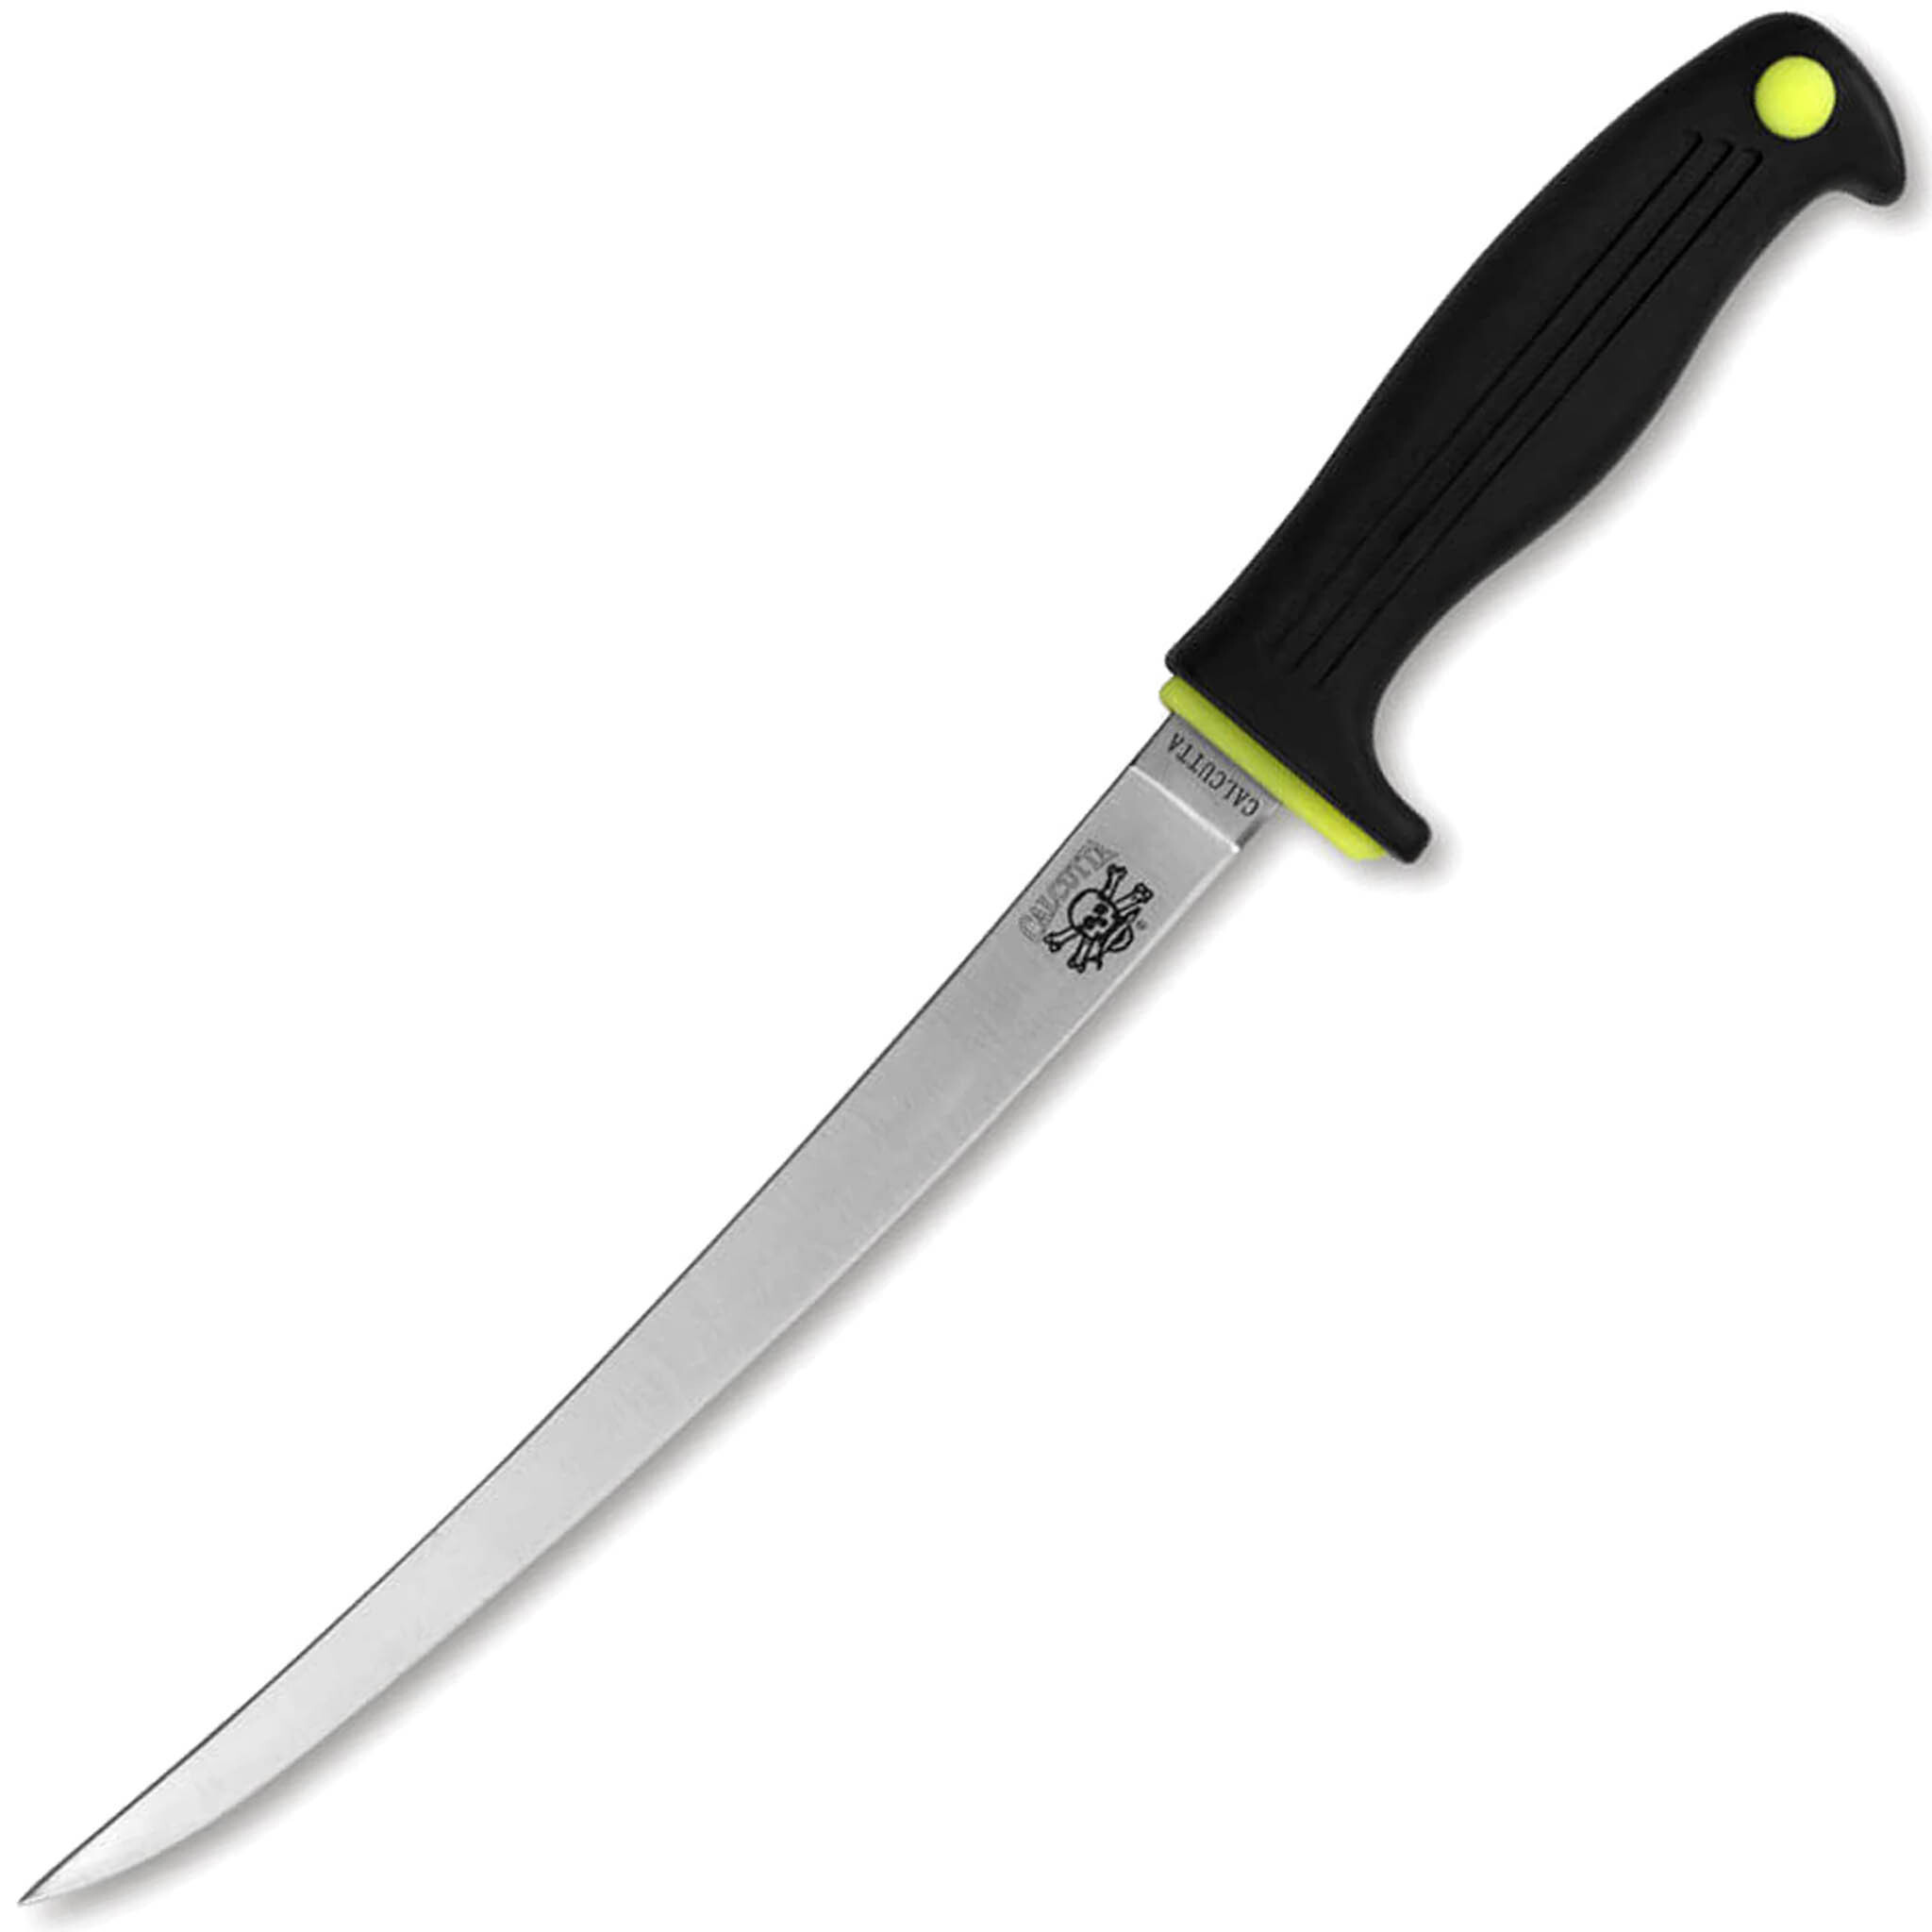 Нож филейный Kershaw Calcutta 7, сталь 420J2, рукоять пластик, черный